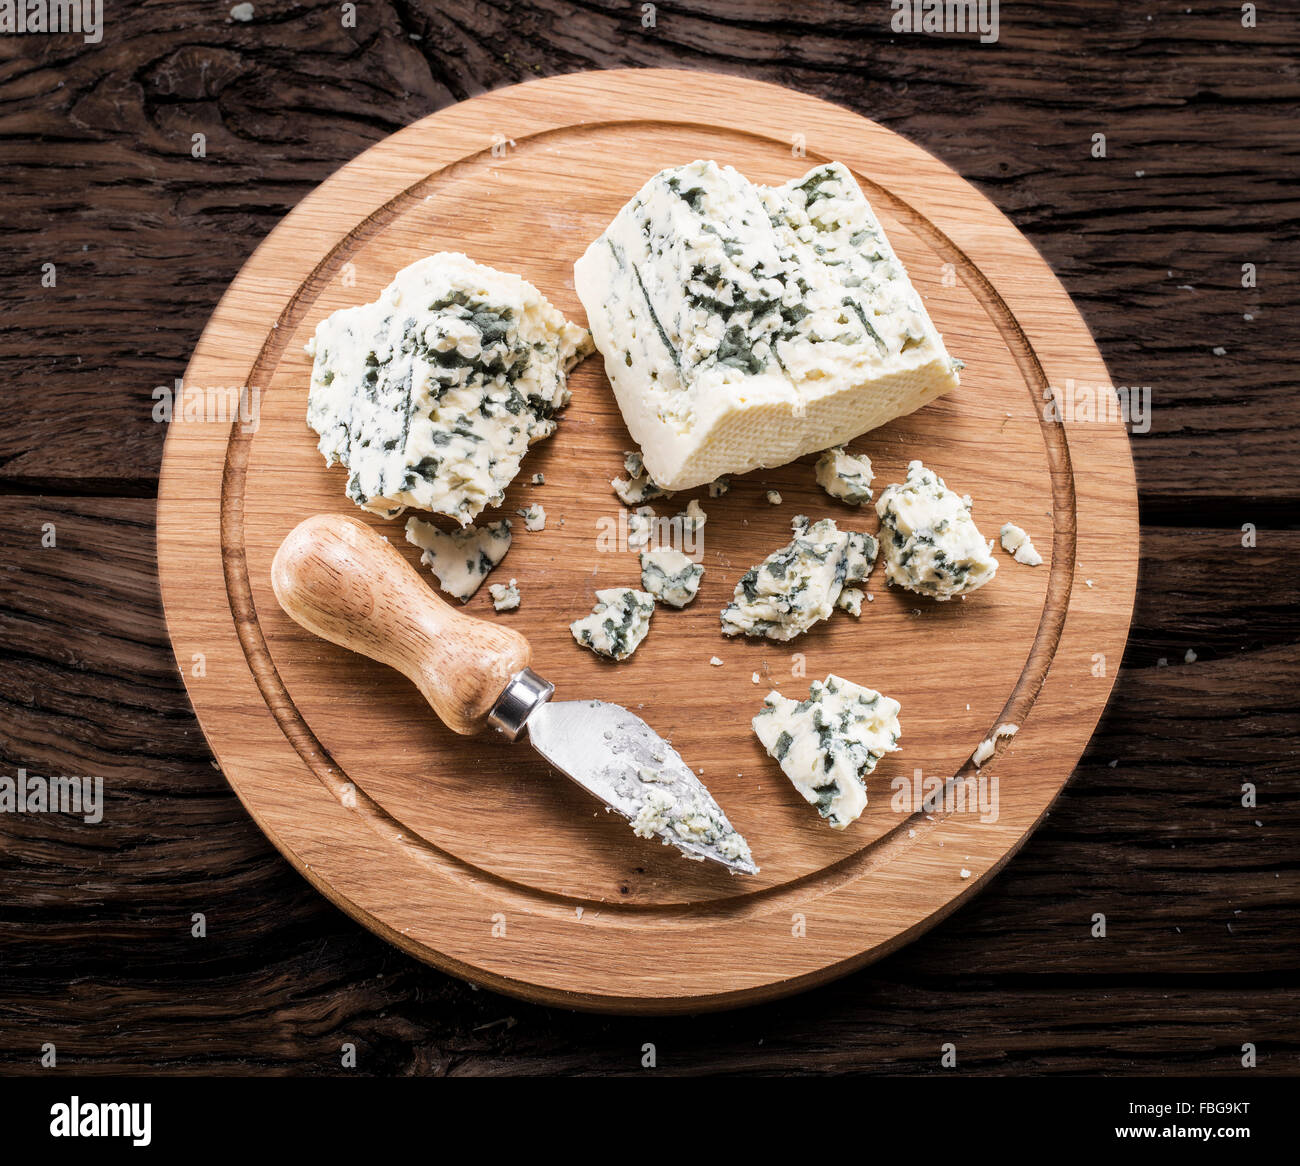 Fromage bleu danois sur une planche de bois. Banque D'Images